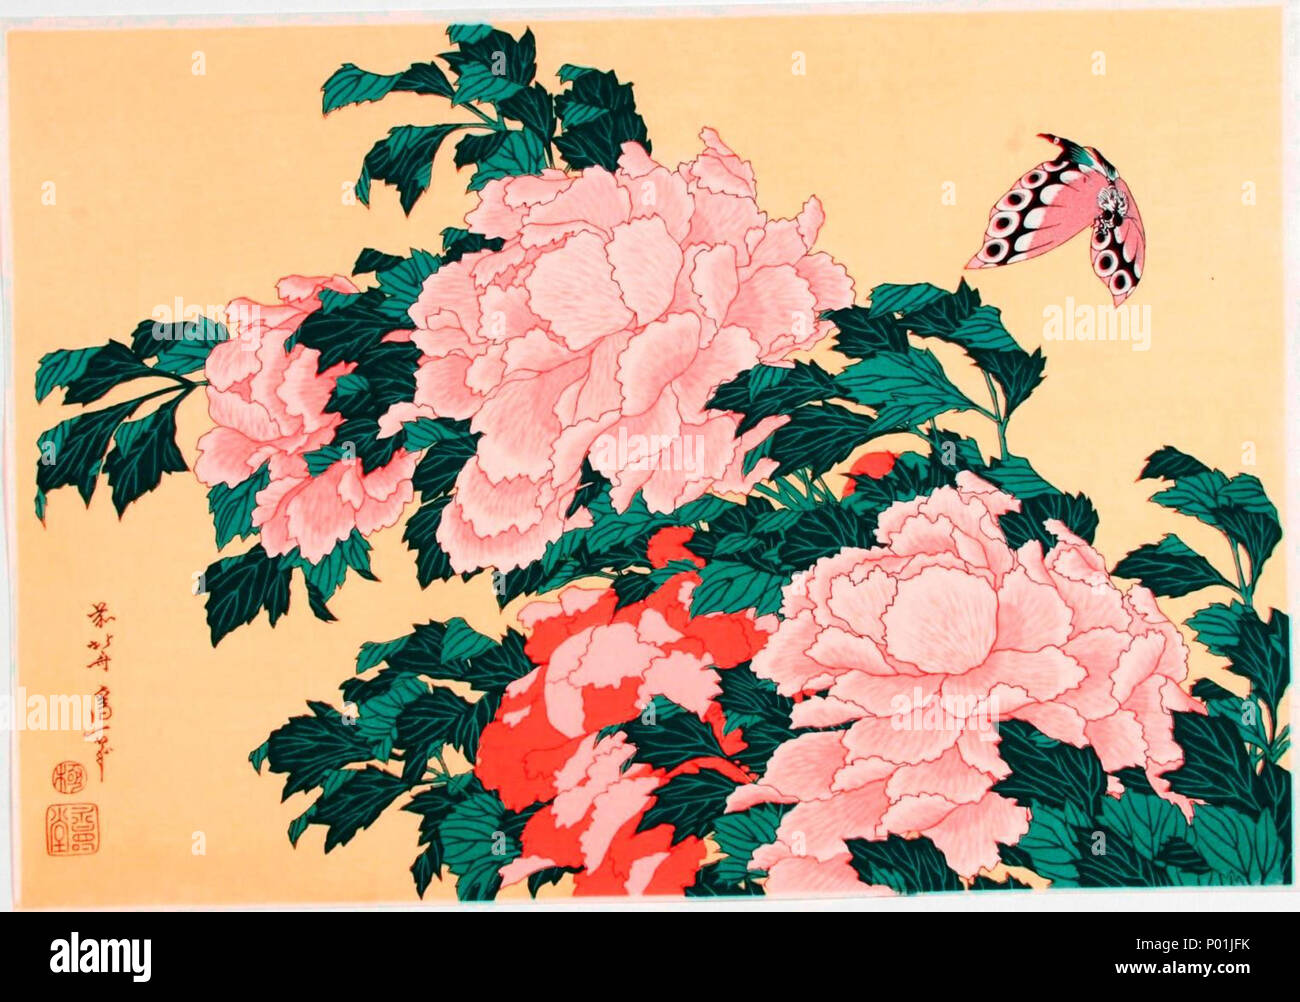 . Englisch: Katsushika Hokusai (1760-1849), Pfingstrosen und blühen. Sammlung japanischer Drucke von Centre Céramique, Maastricht, Niederlande. 25. November 2014. Katsushika Hokusai (1760-1849) 13 Katsushika Hokusai (1760-1849), Pioenroos met bloesem Stockfoto